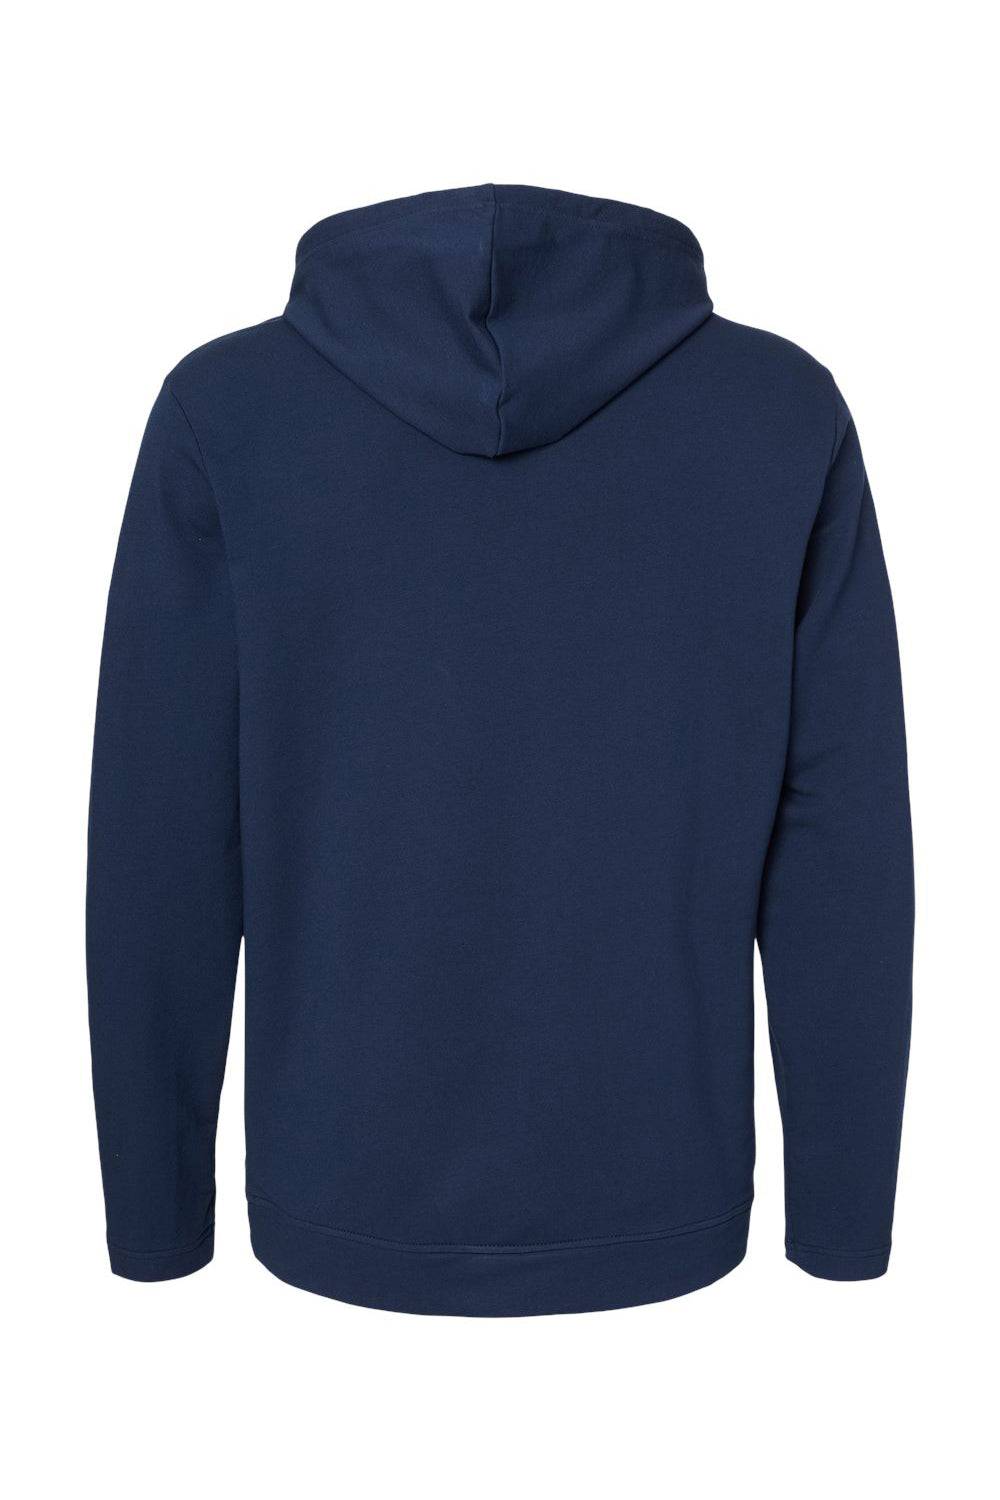 Adidas A450 Mens Hooded Sweatshirt Hoodie Collegiate Navy Blue Flat Back